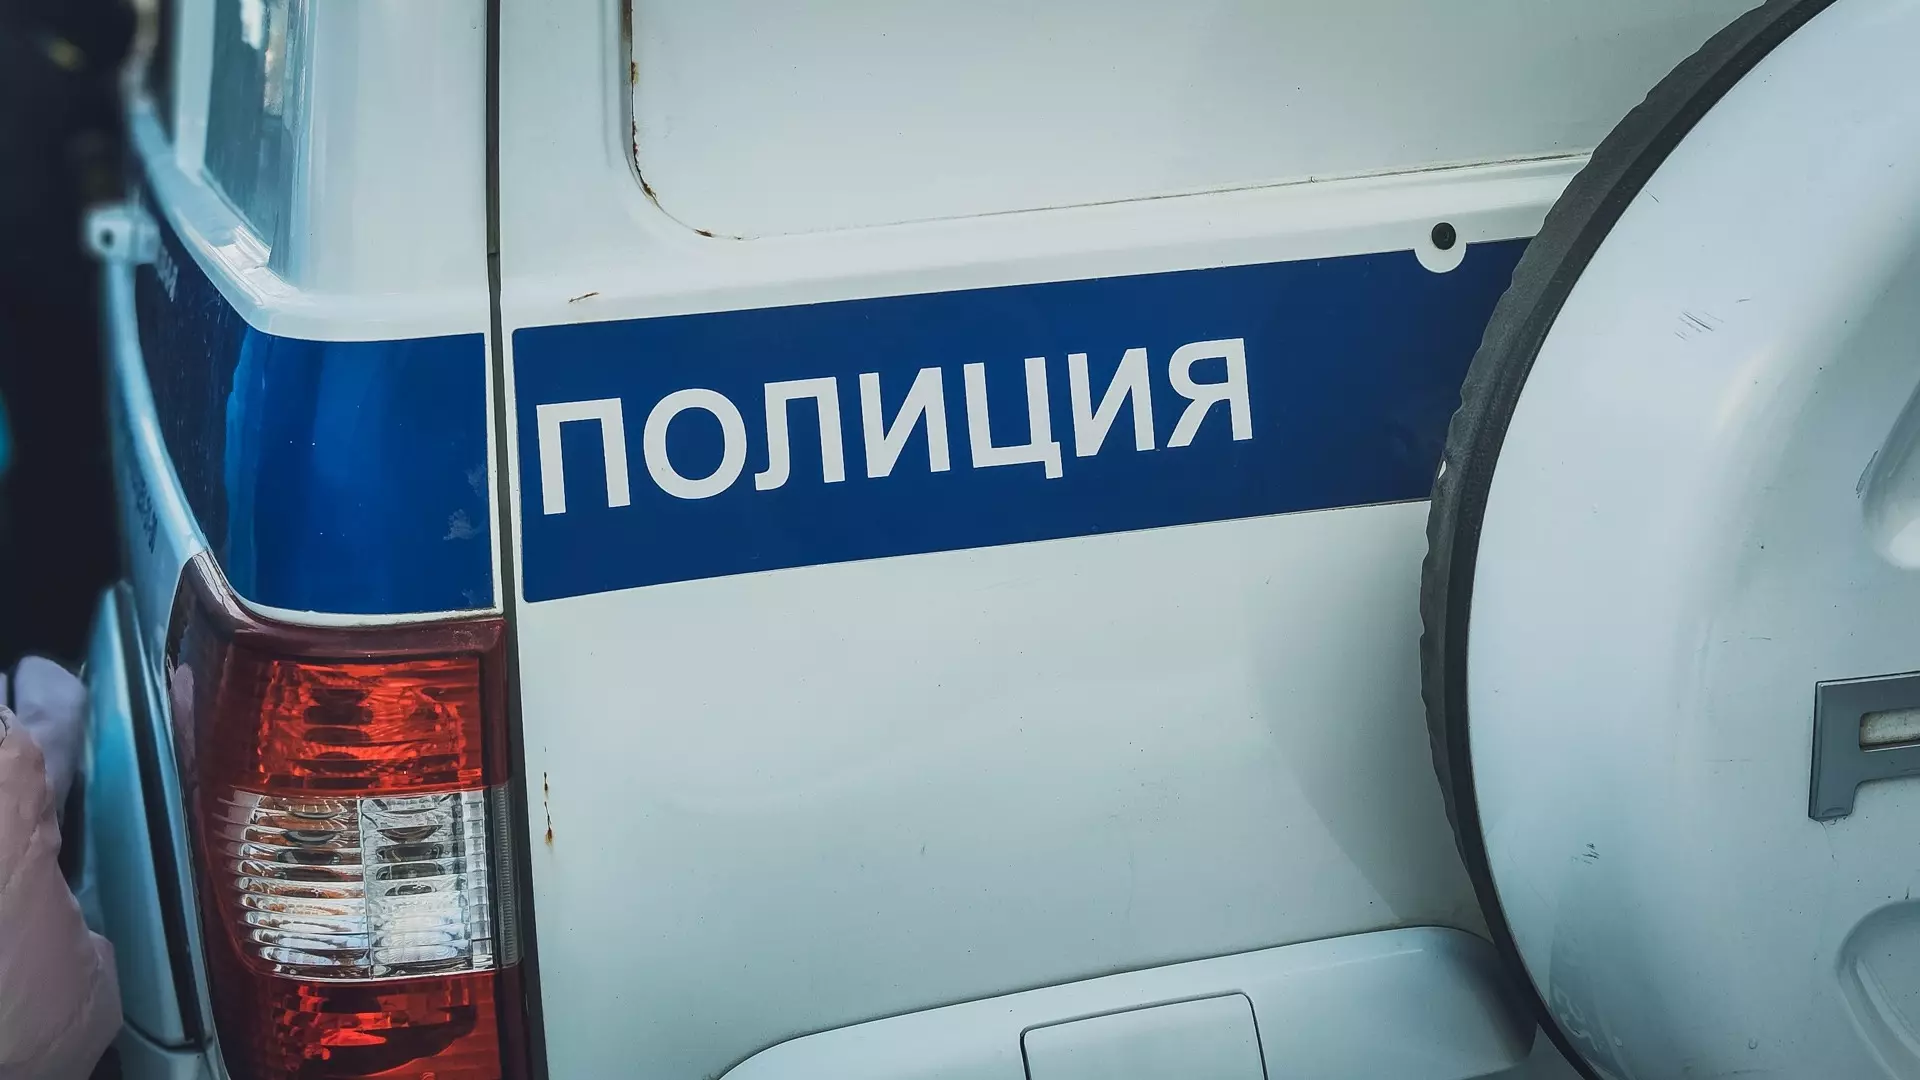 Нападение на банк произошло в Хабаровске